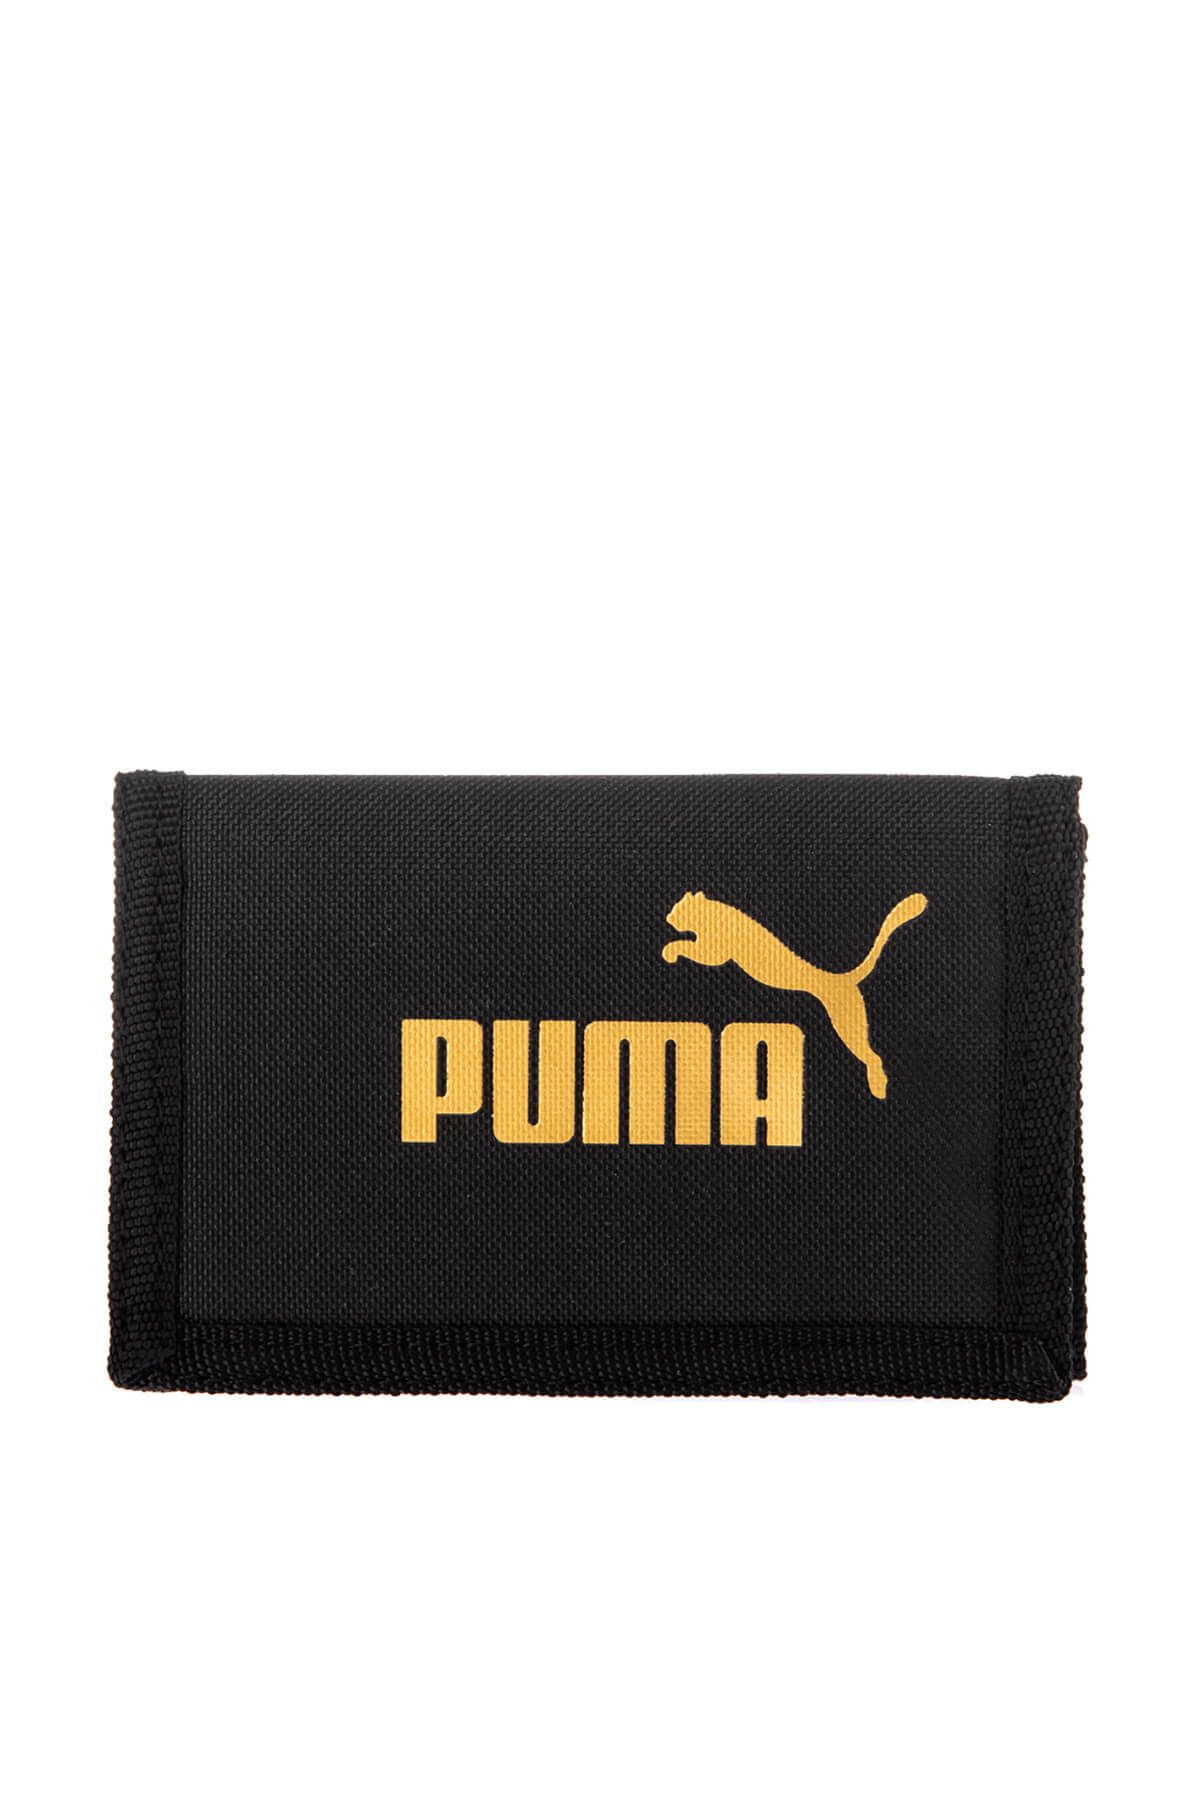 Puma Unisex Cüzdan - Phase Wallet - 07561708